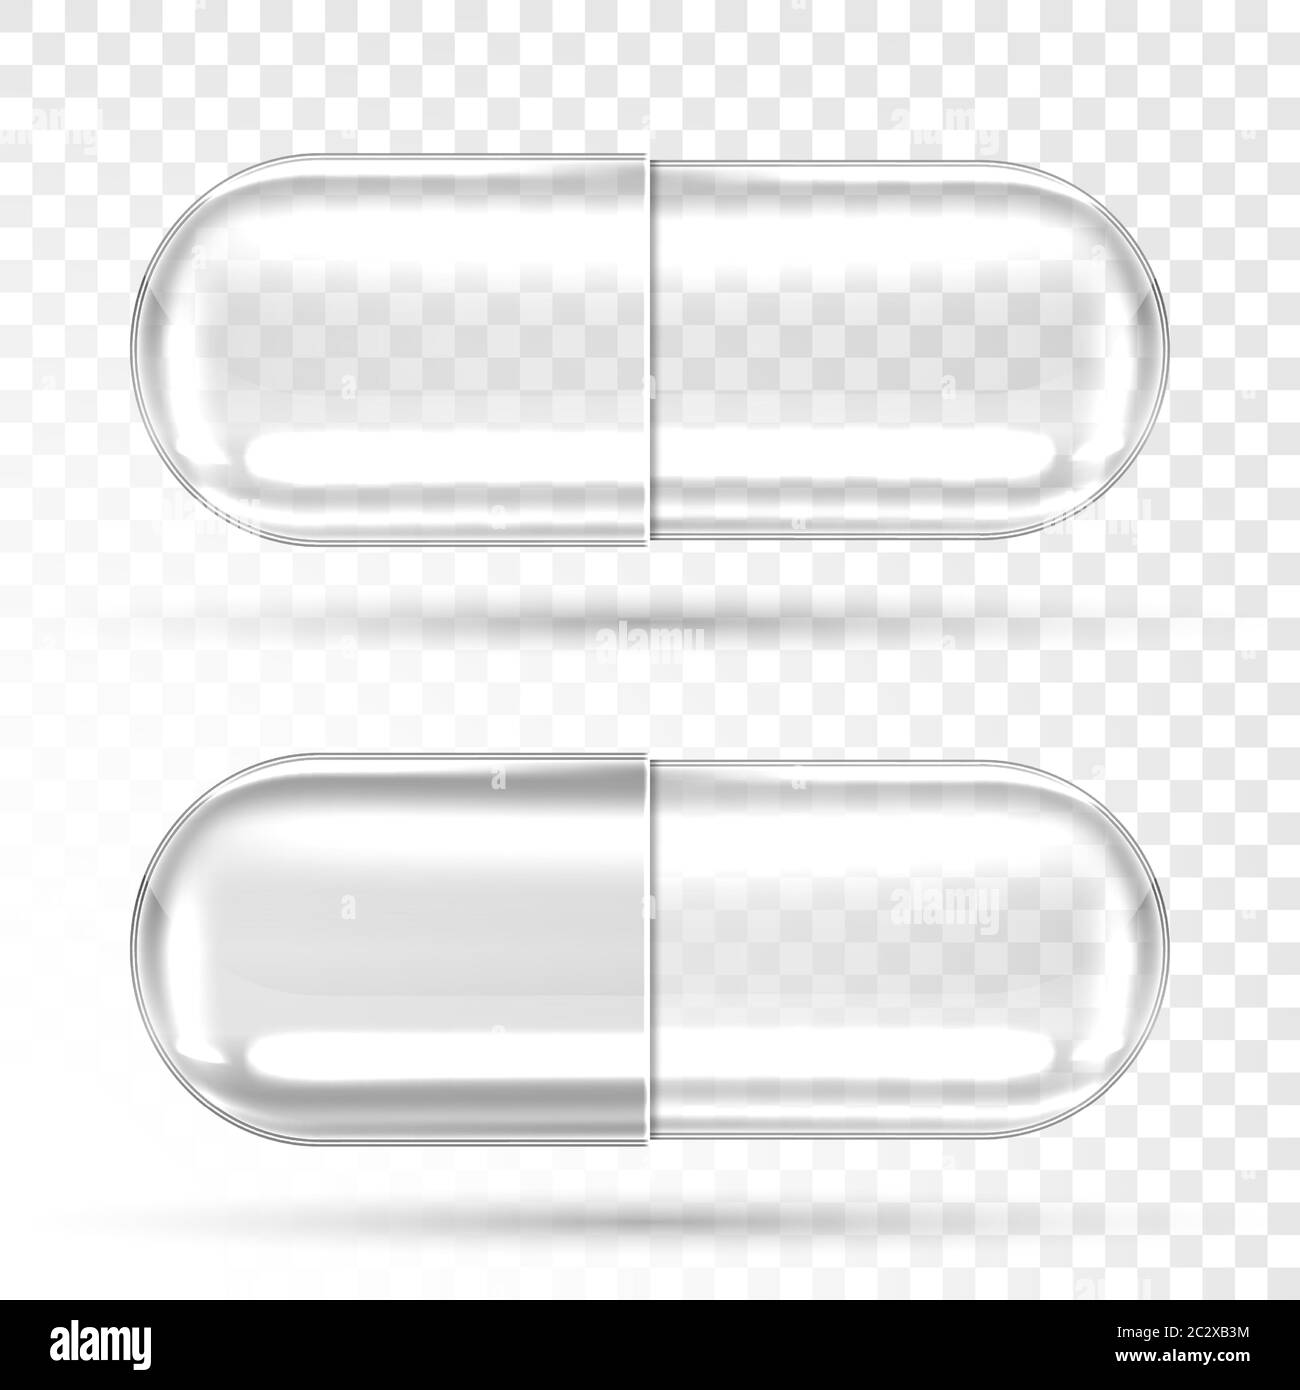 Capsule vuote per pillole isolate su sfondo trasparente. Vettore realistico mockup di capsule farmaceutiche, compresse mediche, antibiotici o farmaci a base di erbe. Illustrazione Vettoriale